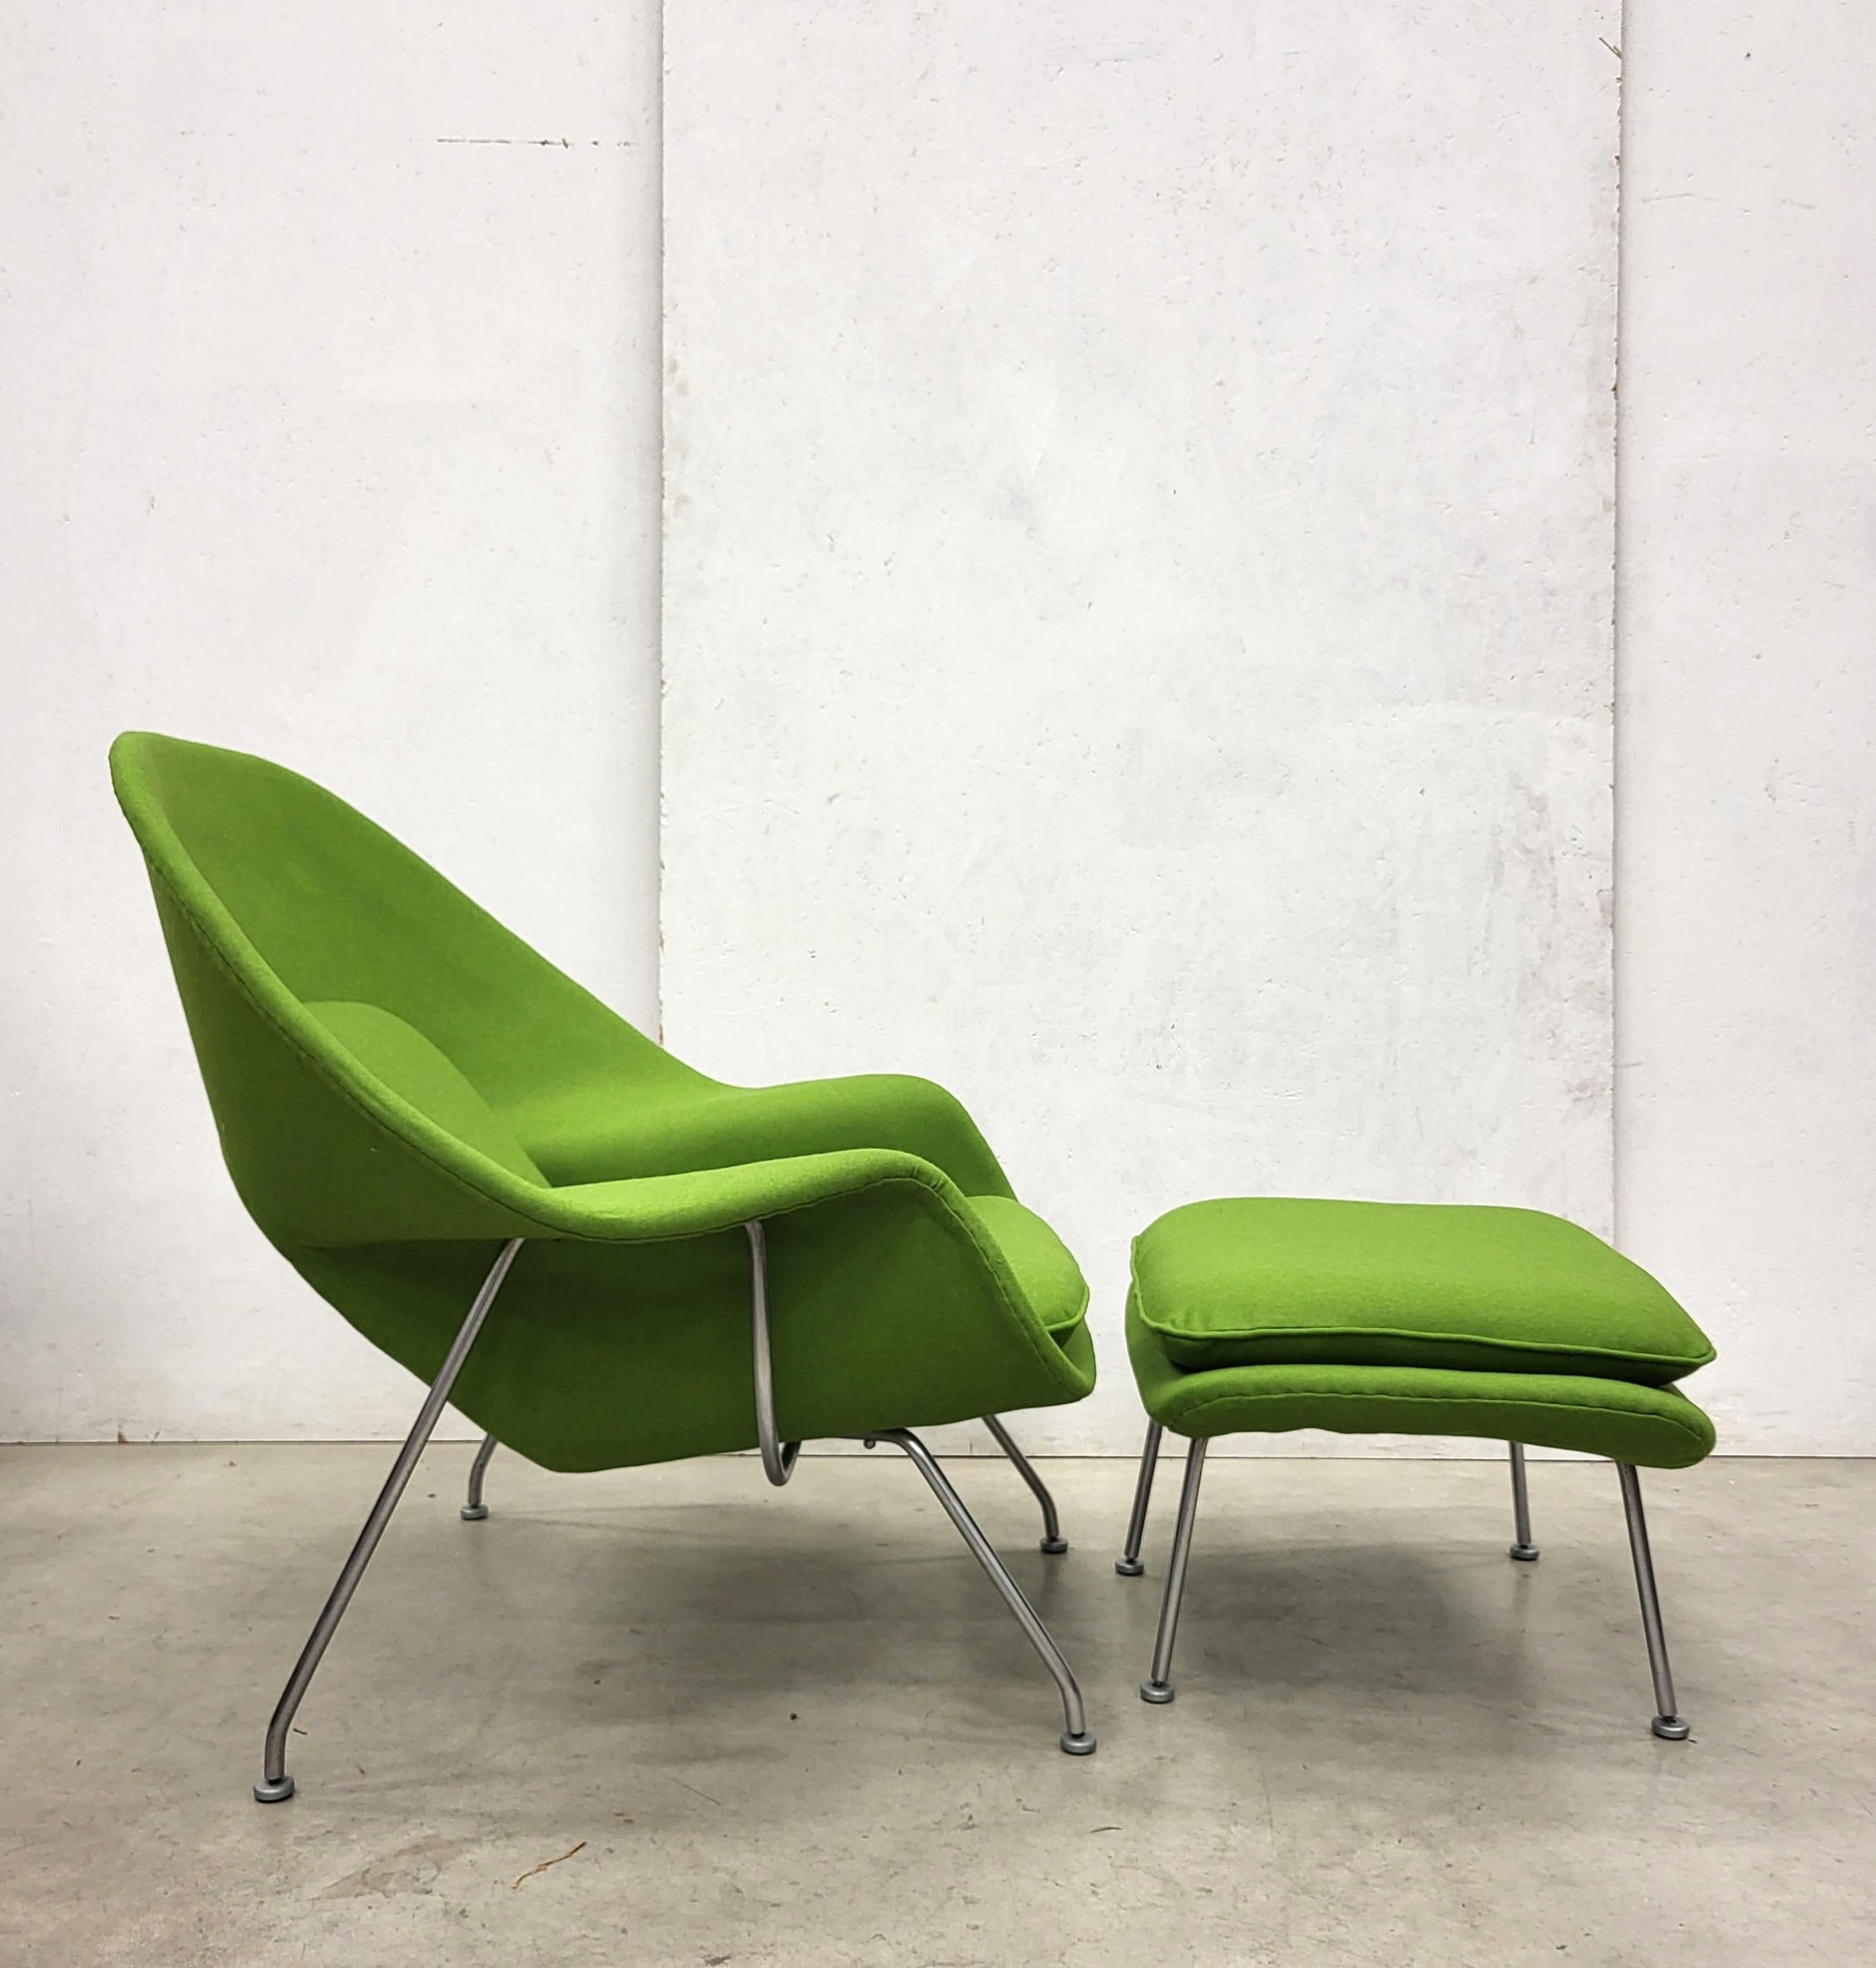 Womb Chair & Ottomane aus Holzgrün von Eero Saarinen für Knoll, 1960er Jahre (amerikanisch)